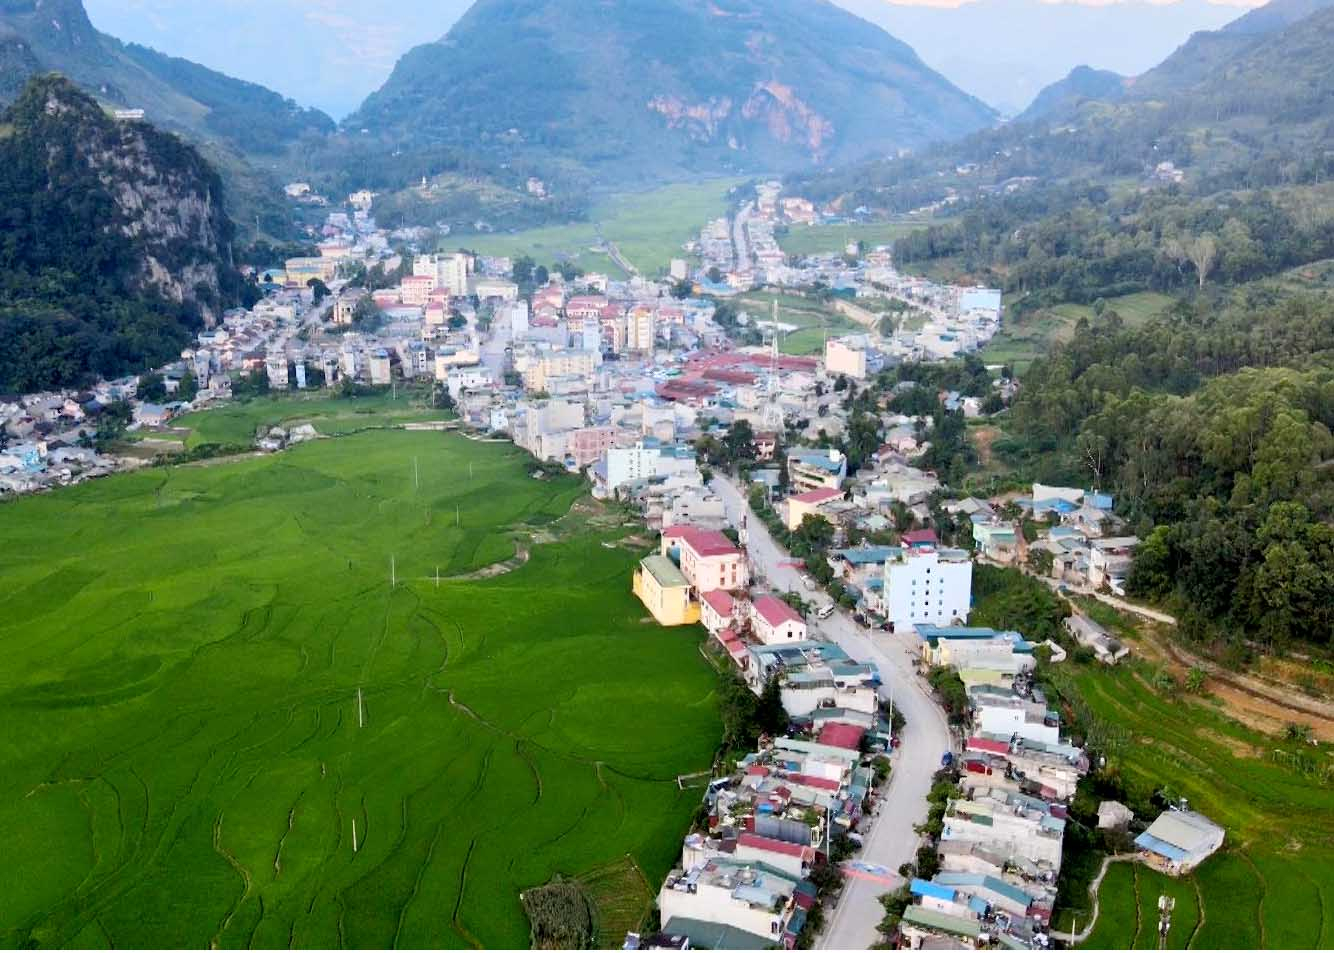 Siết chặt quản lý xây dựng và quy hoạch đô thị giúp huyện Đồng Văn phát triển du lịch bền vững.
Trong ảnh: Toàn cảnh thị trấn Đồng Văn.